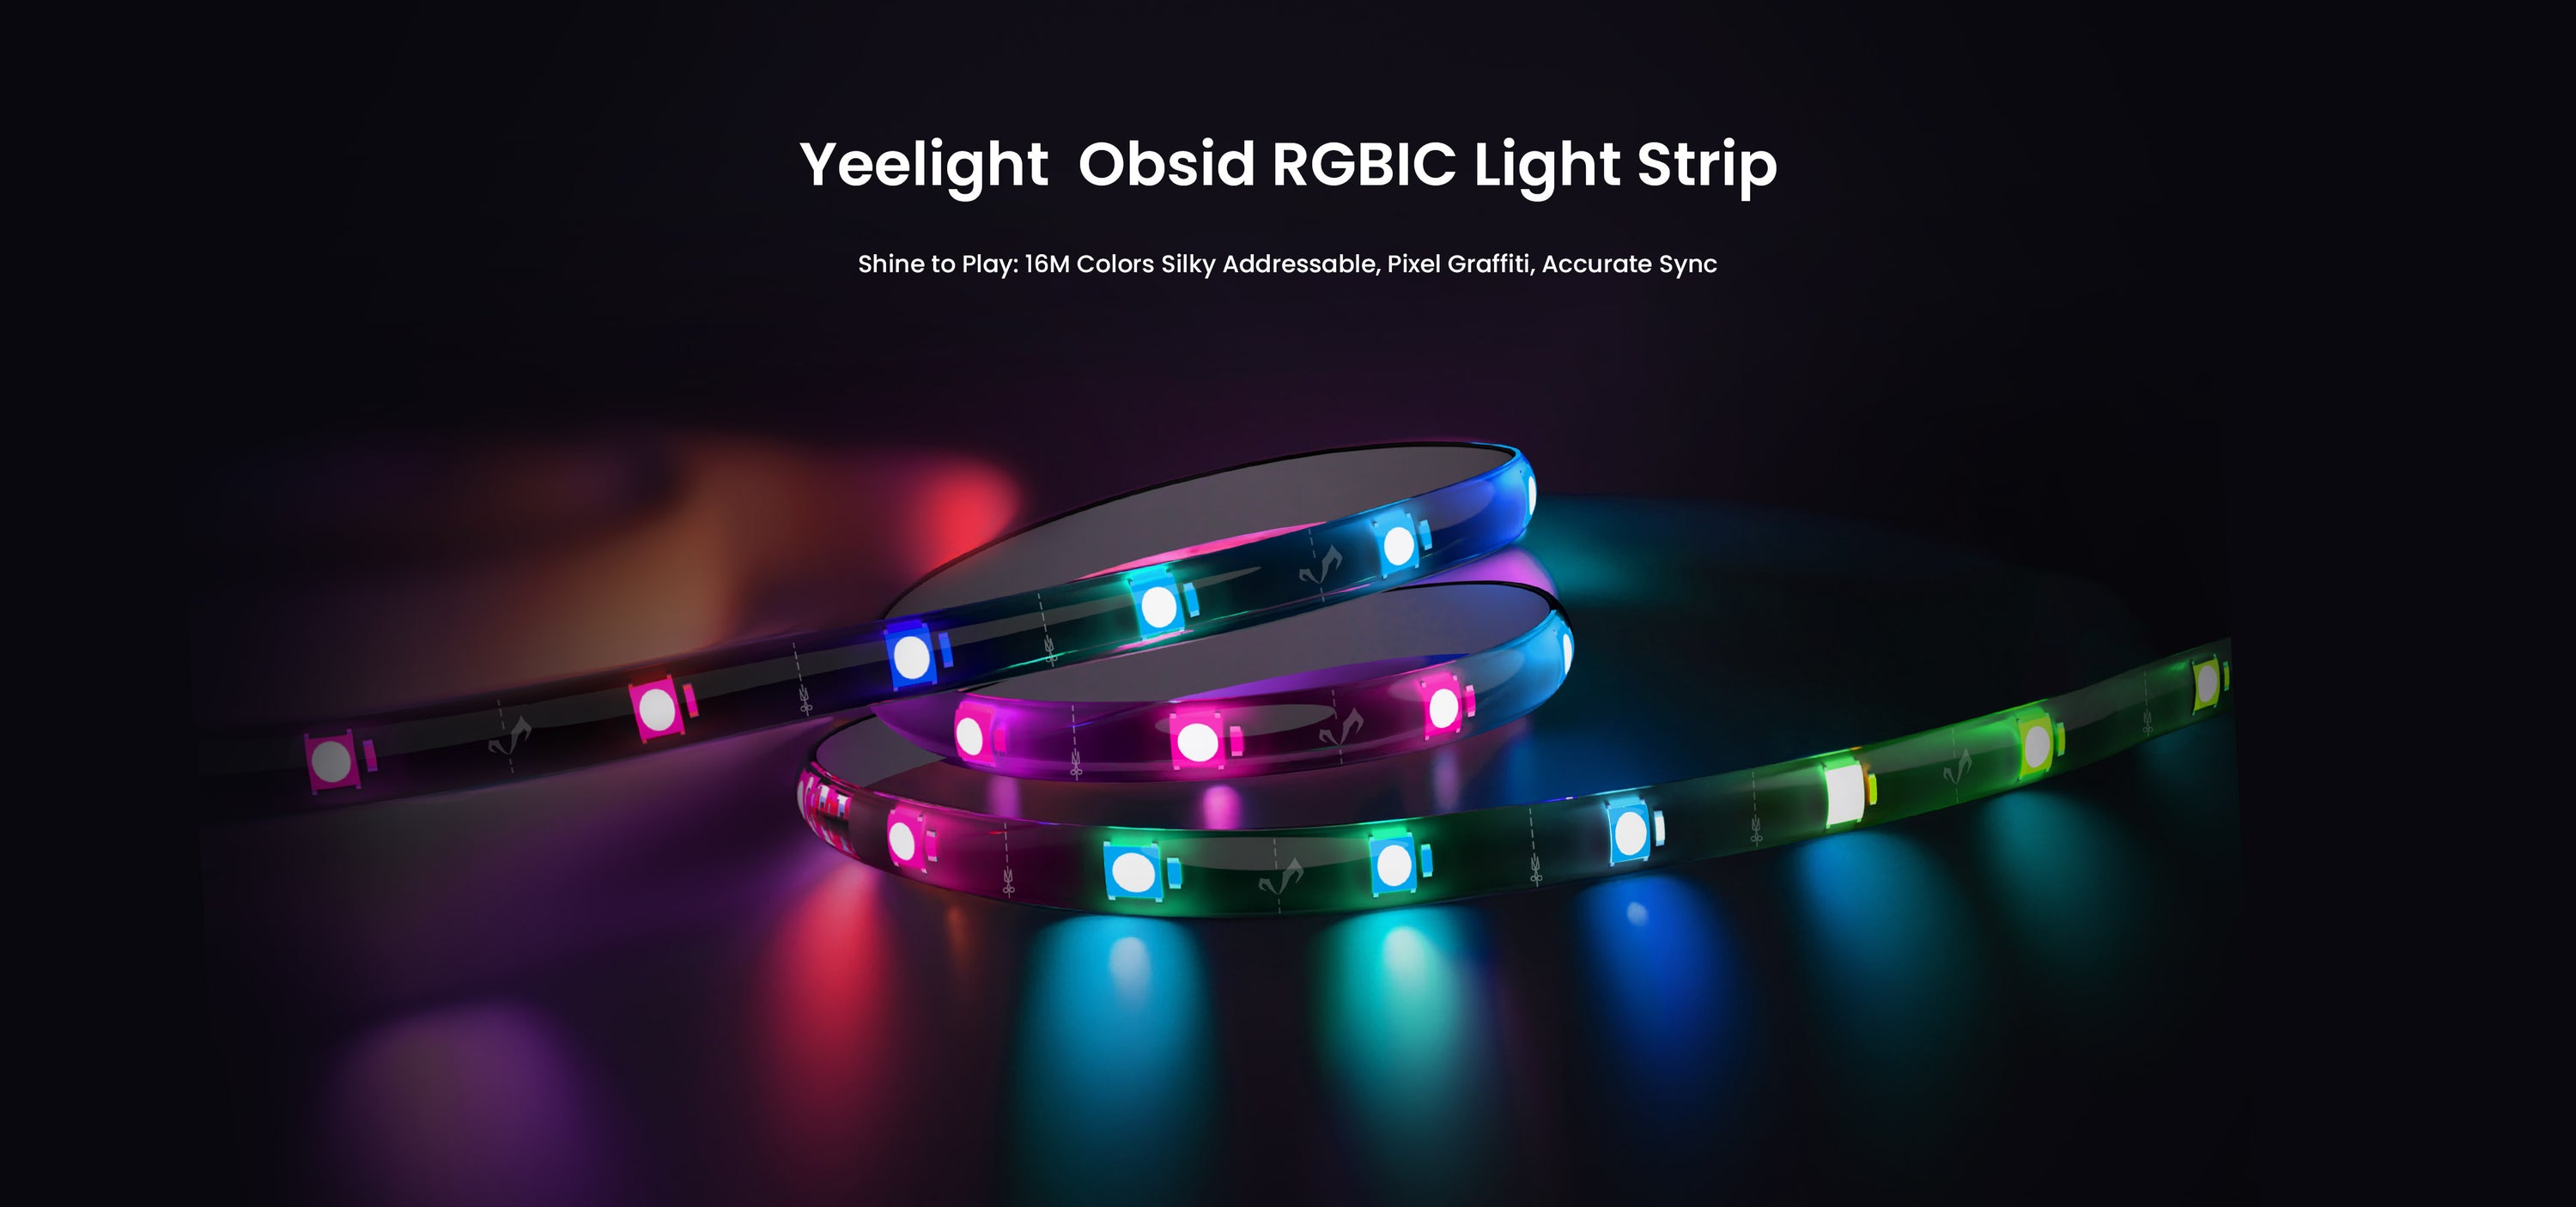 Yeelight lanserte Obsid RGBIC LED-lysstripen, som kan synkroniseres med musikk og spill.